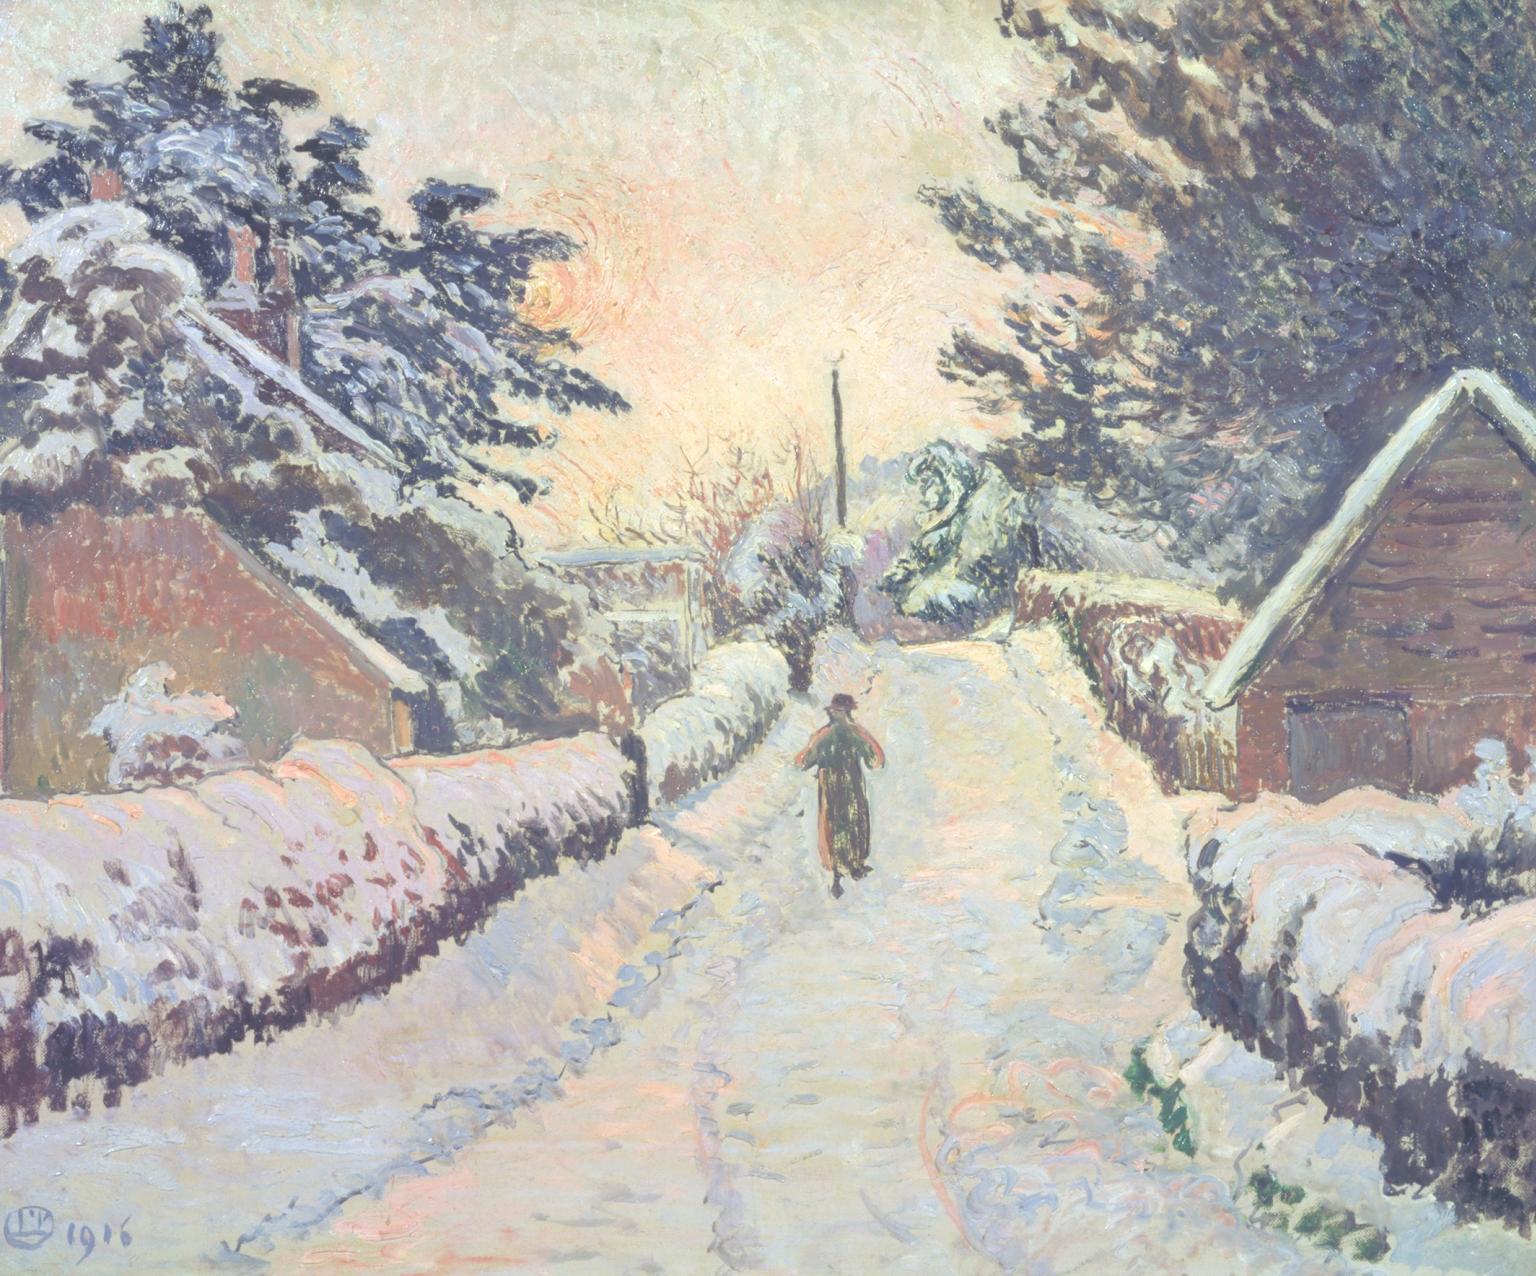 Котедж Айві, Колдхарбор: сонце і сніг by Lucien Pissarro - 1916 - 53 × 64,4 см 